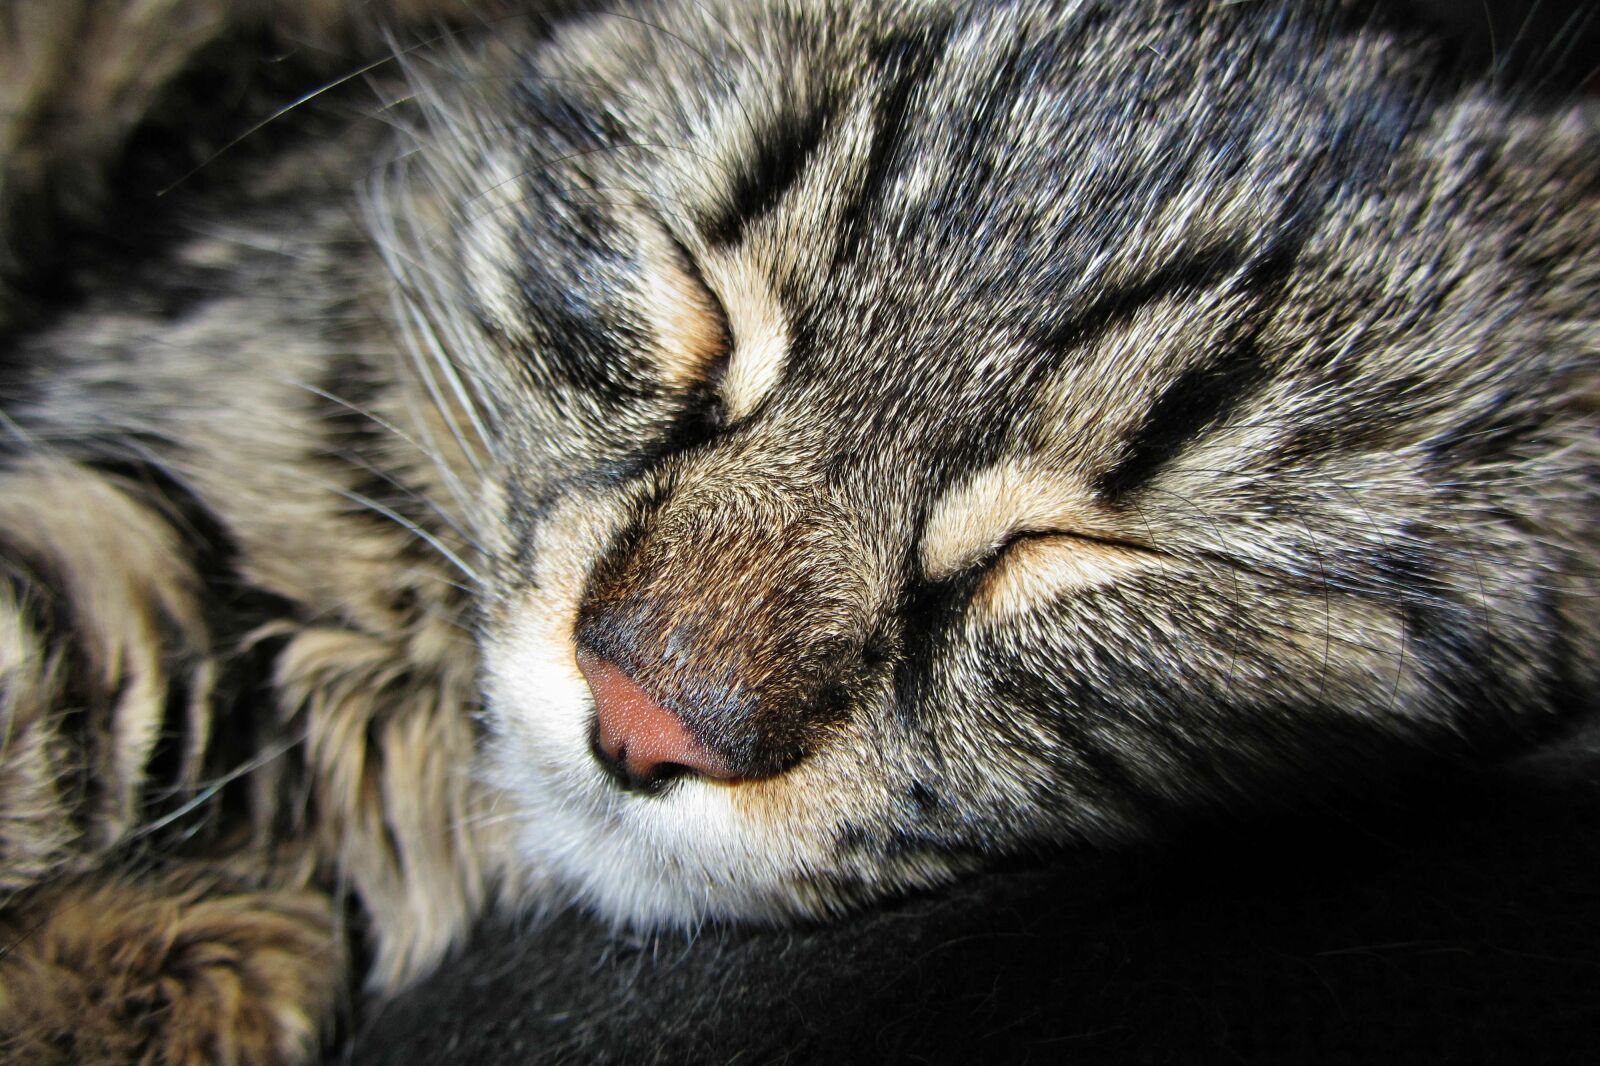 Canon PowerShot SX220 HS sample photo. Kitten, sleeps, peace of photography